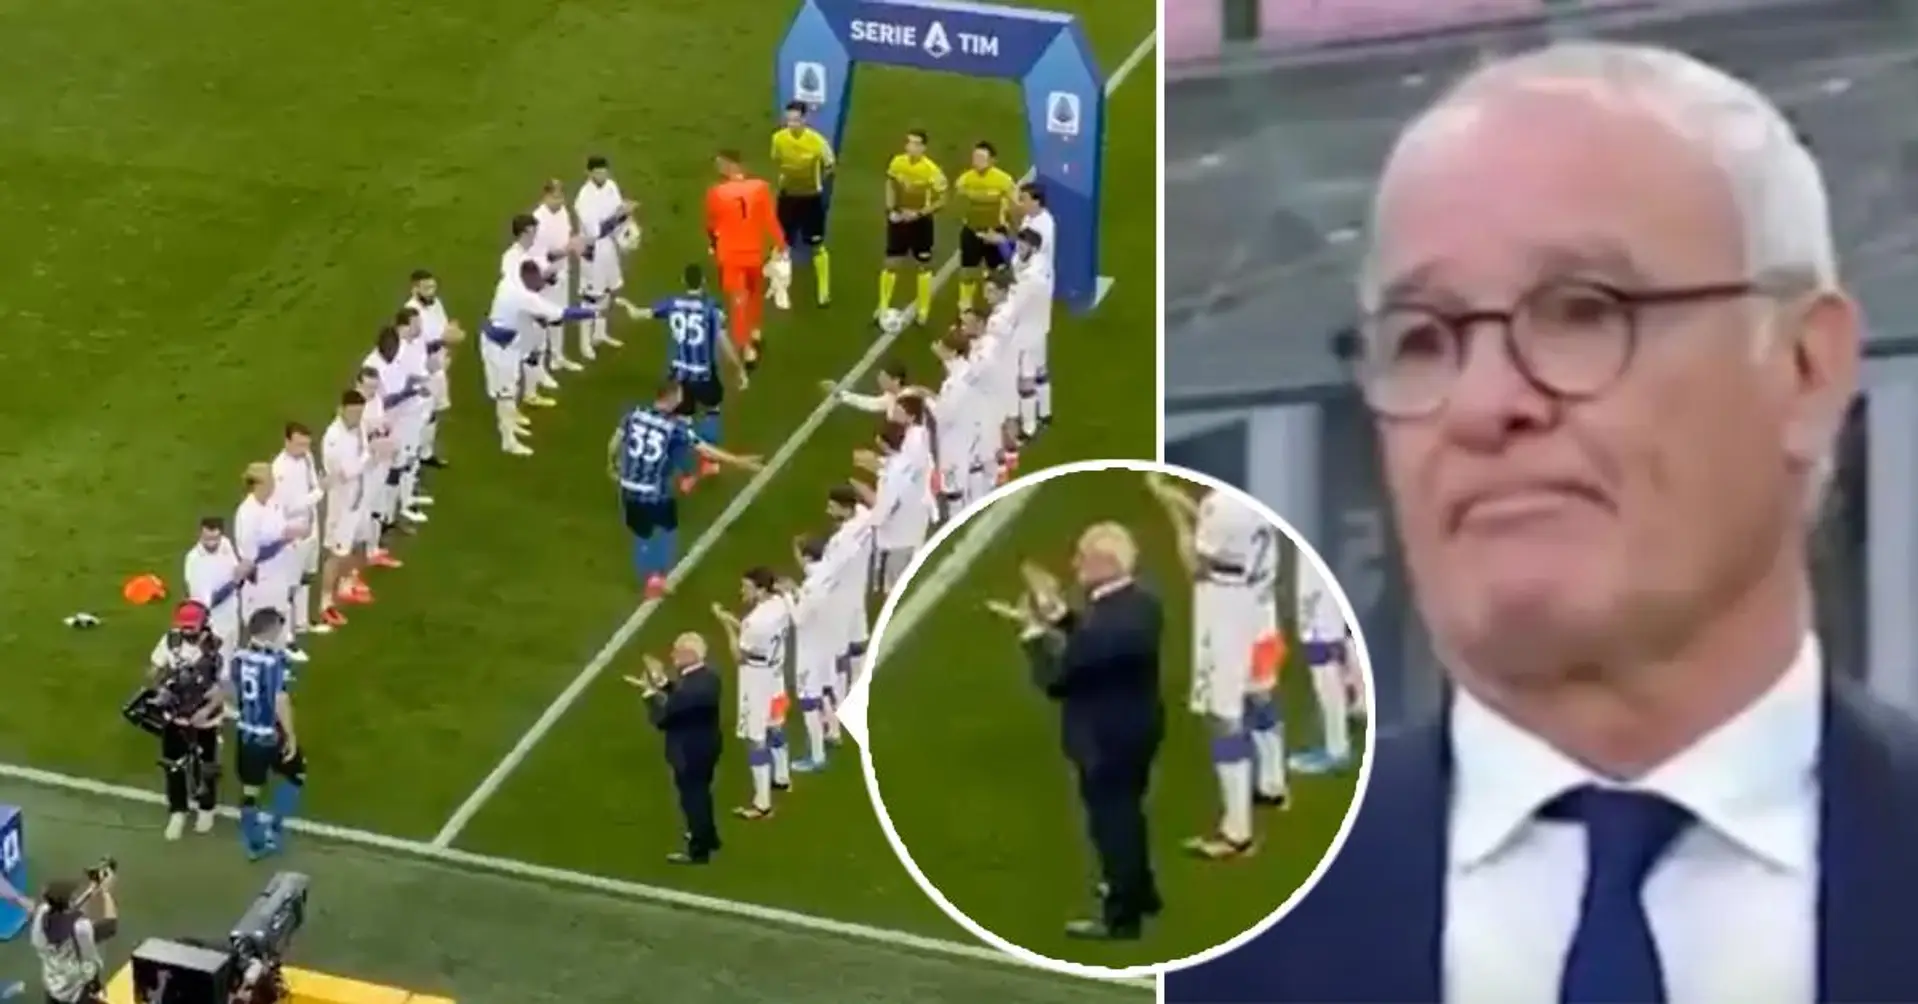 CLASSE: Claudio Ranieri svela quello che ha detto ai giocatori della Sampdoria prima di affrontare i campioni d'Italia dell'Inter